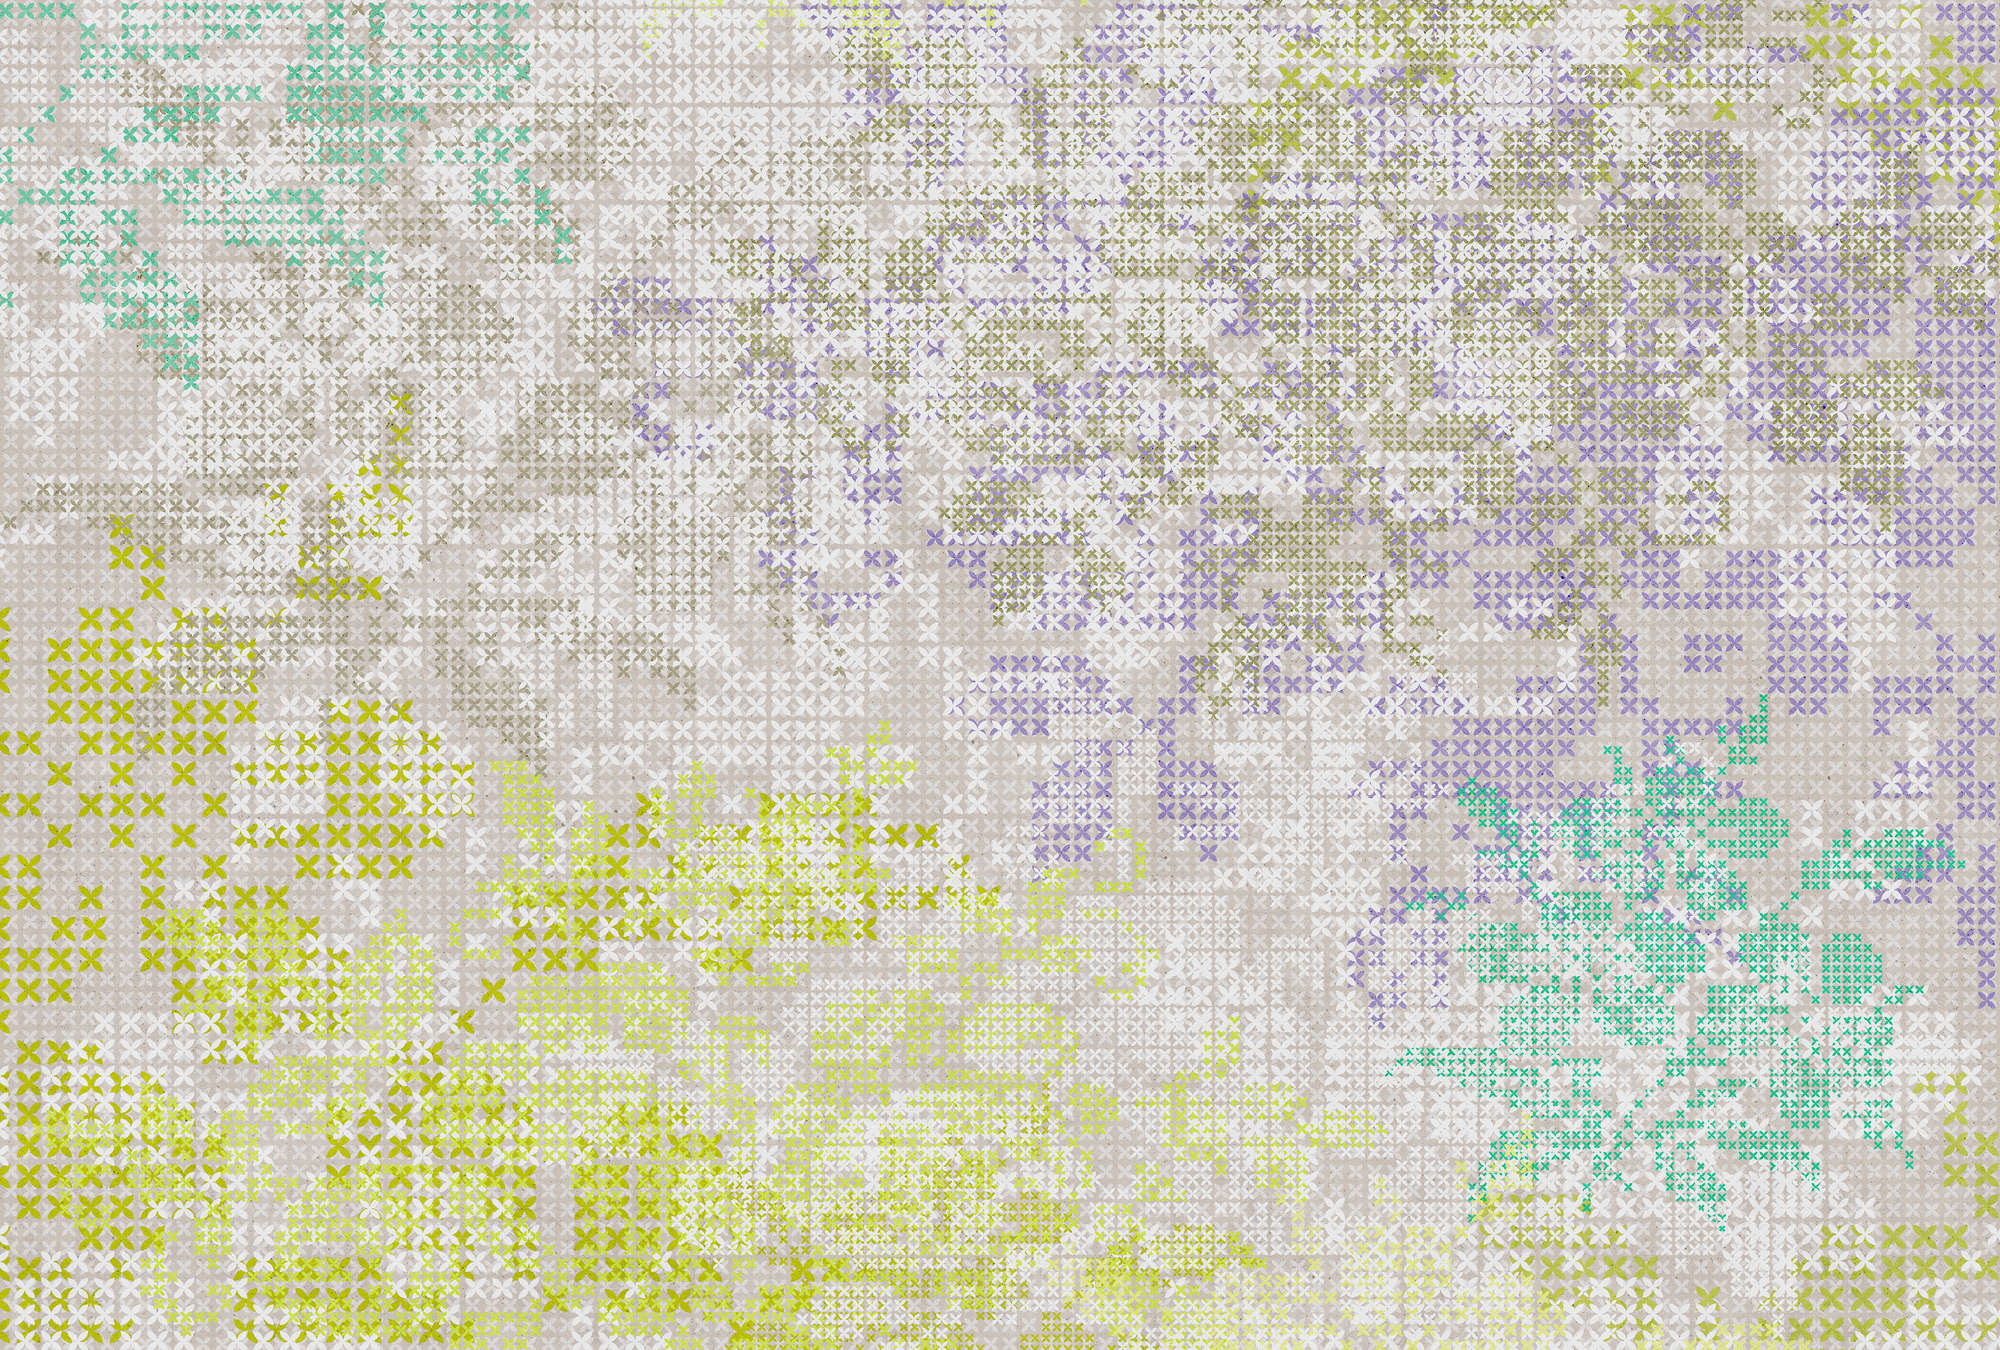             Papier peint fleuri avec motif de pixels - multicolore, gris
        